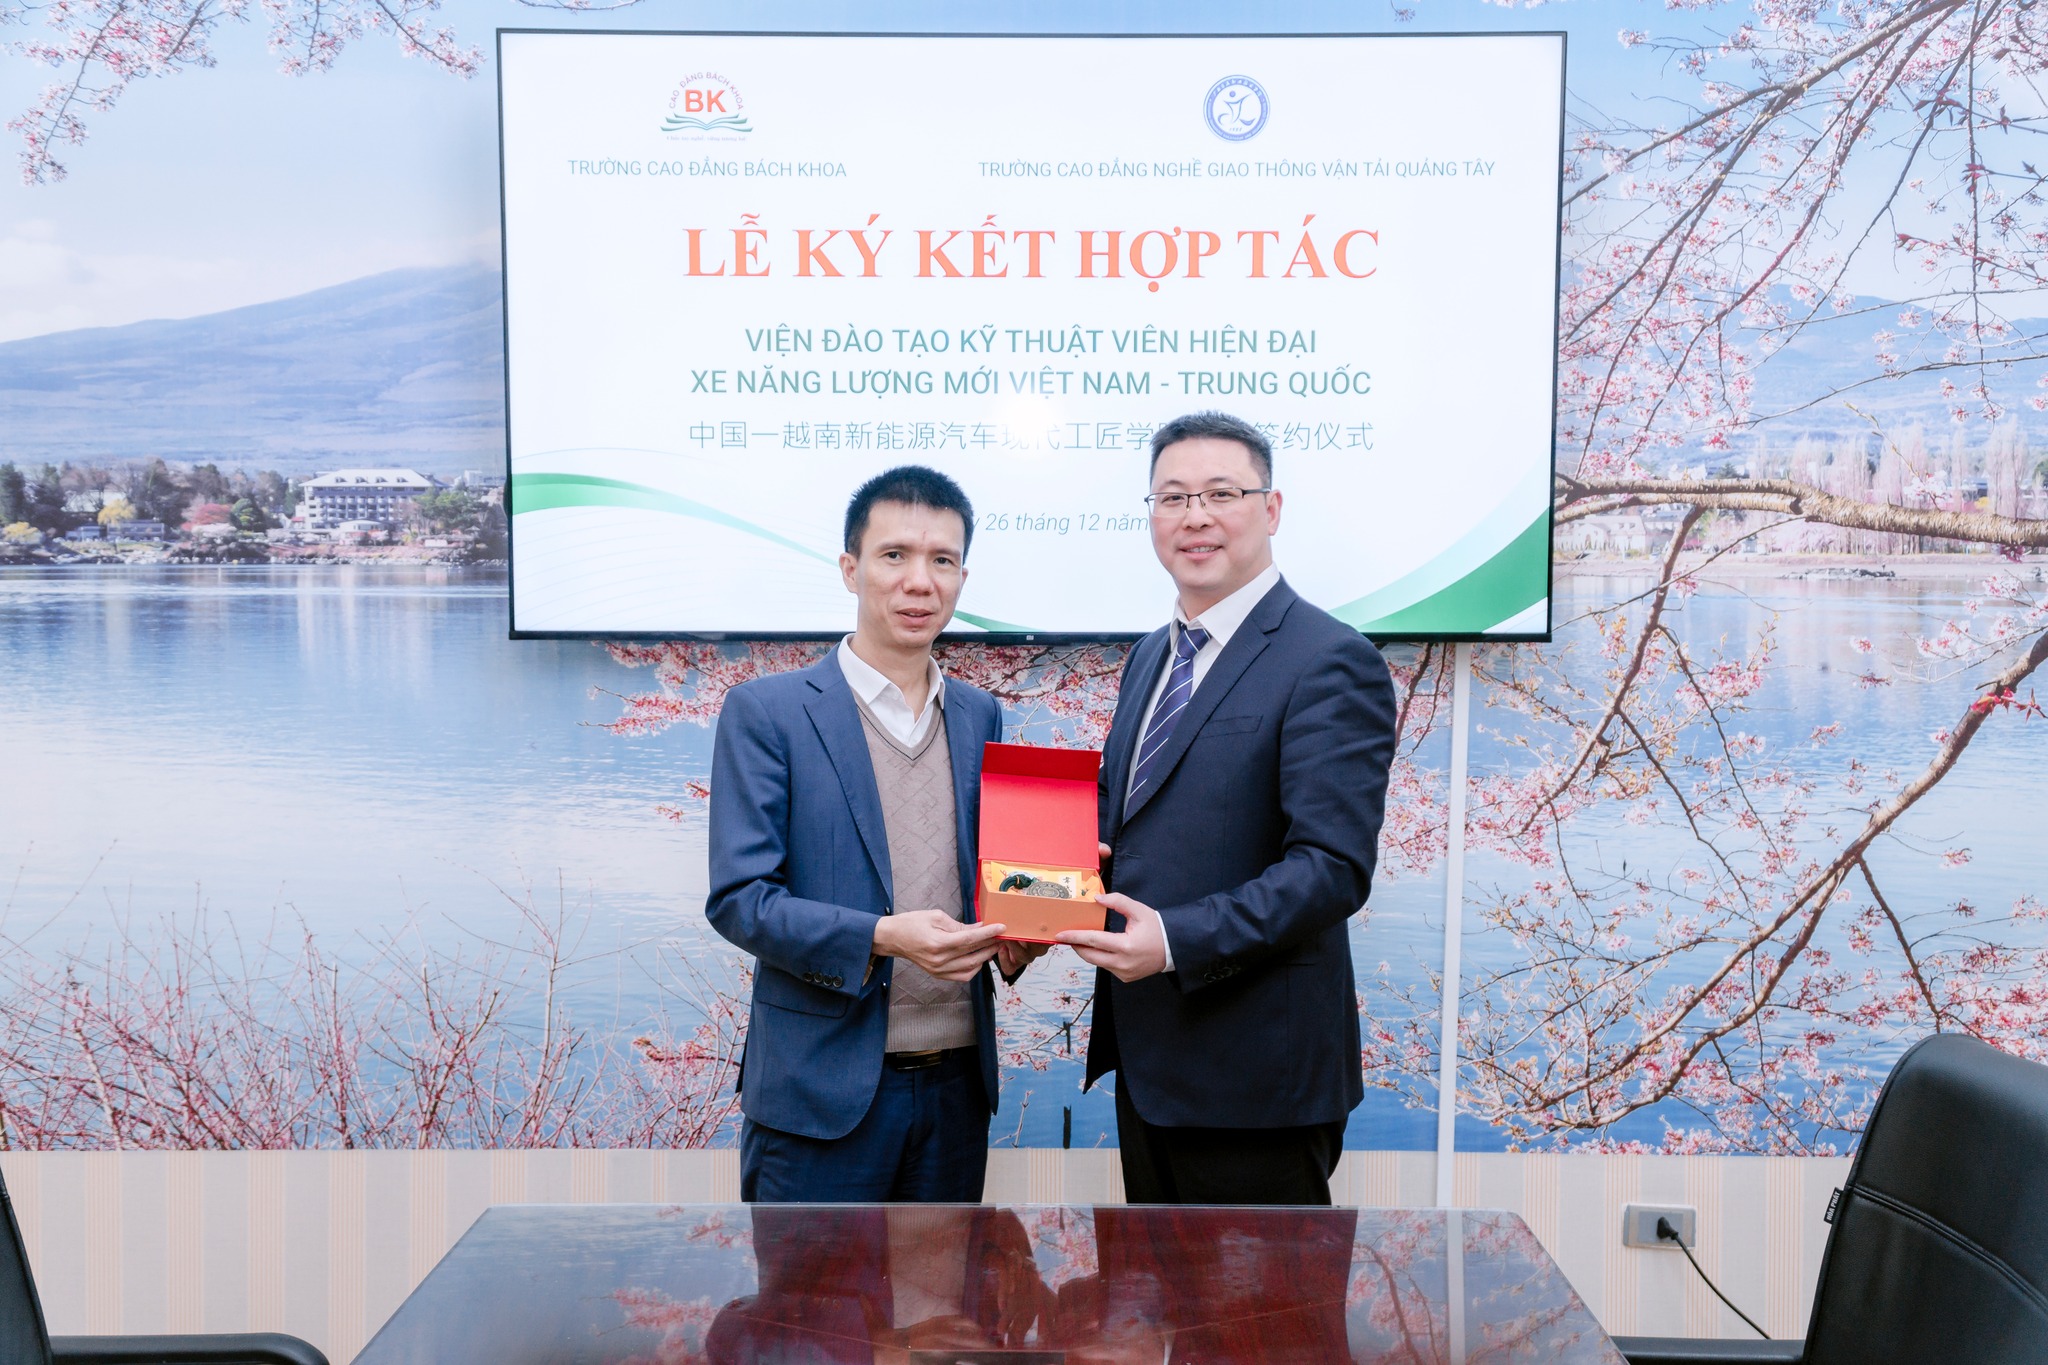 Trường Cao đẳng nghề Giao thông vận tải Quảng Tây ký kết hợp tác với Khoa Công nghệ Ô tô đào tạo nhân lực ngành xe năng lược mới